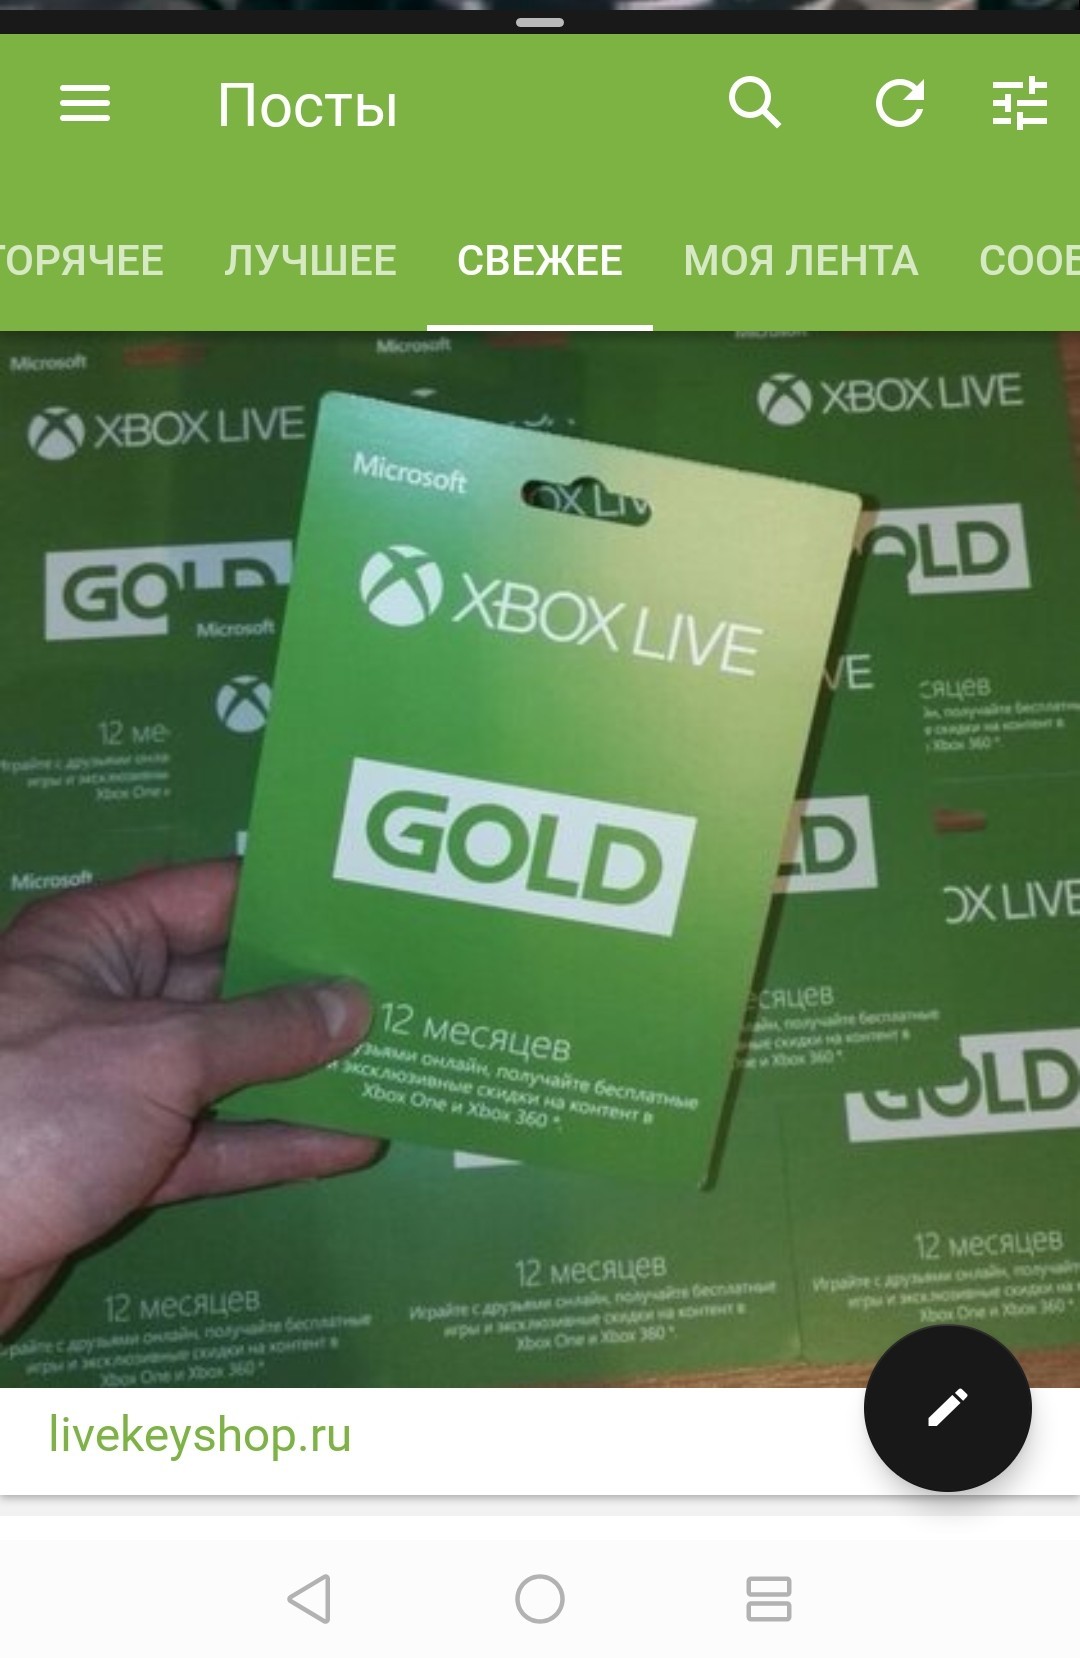 Подписка live gold. Xbox Live Gold. Xbox Live Gold 12. Подписка Xbox Live Gold на 12 месяцев. Подписка Xbox Live Gold.